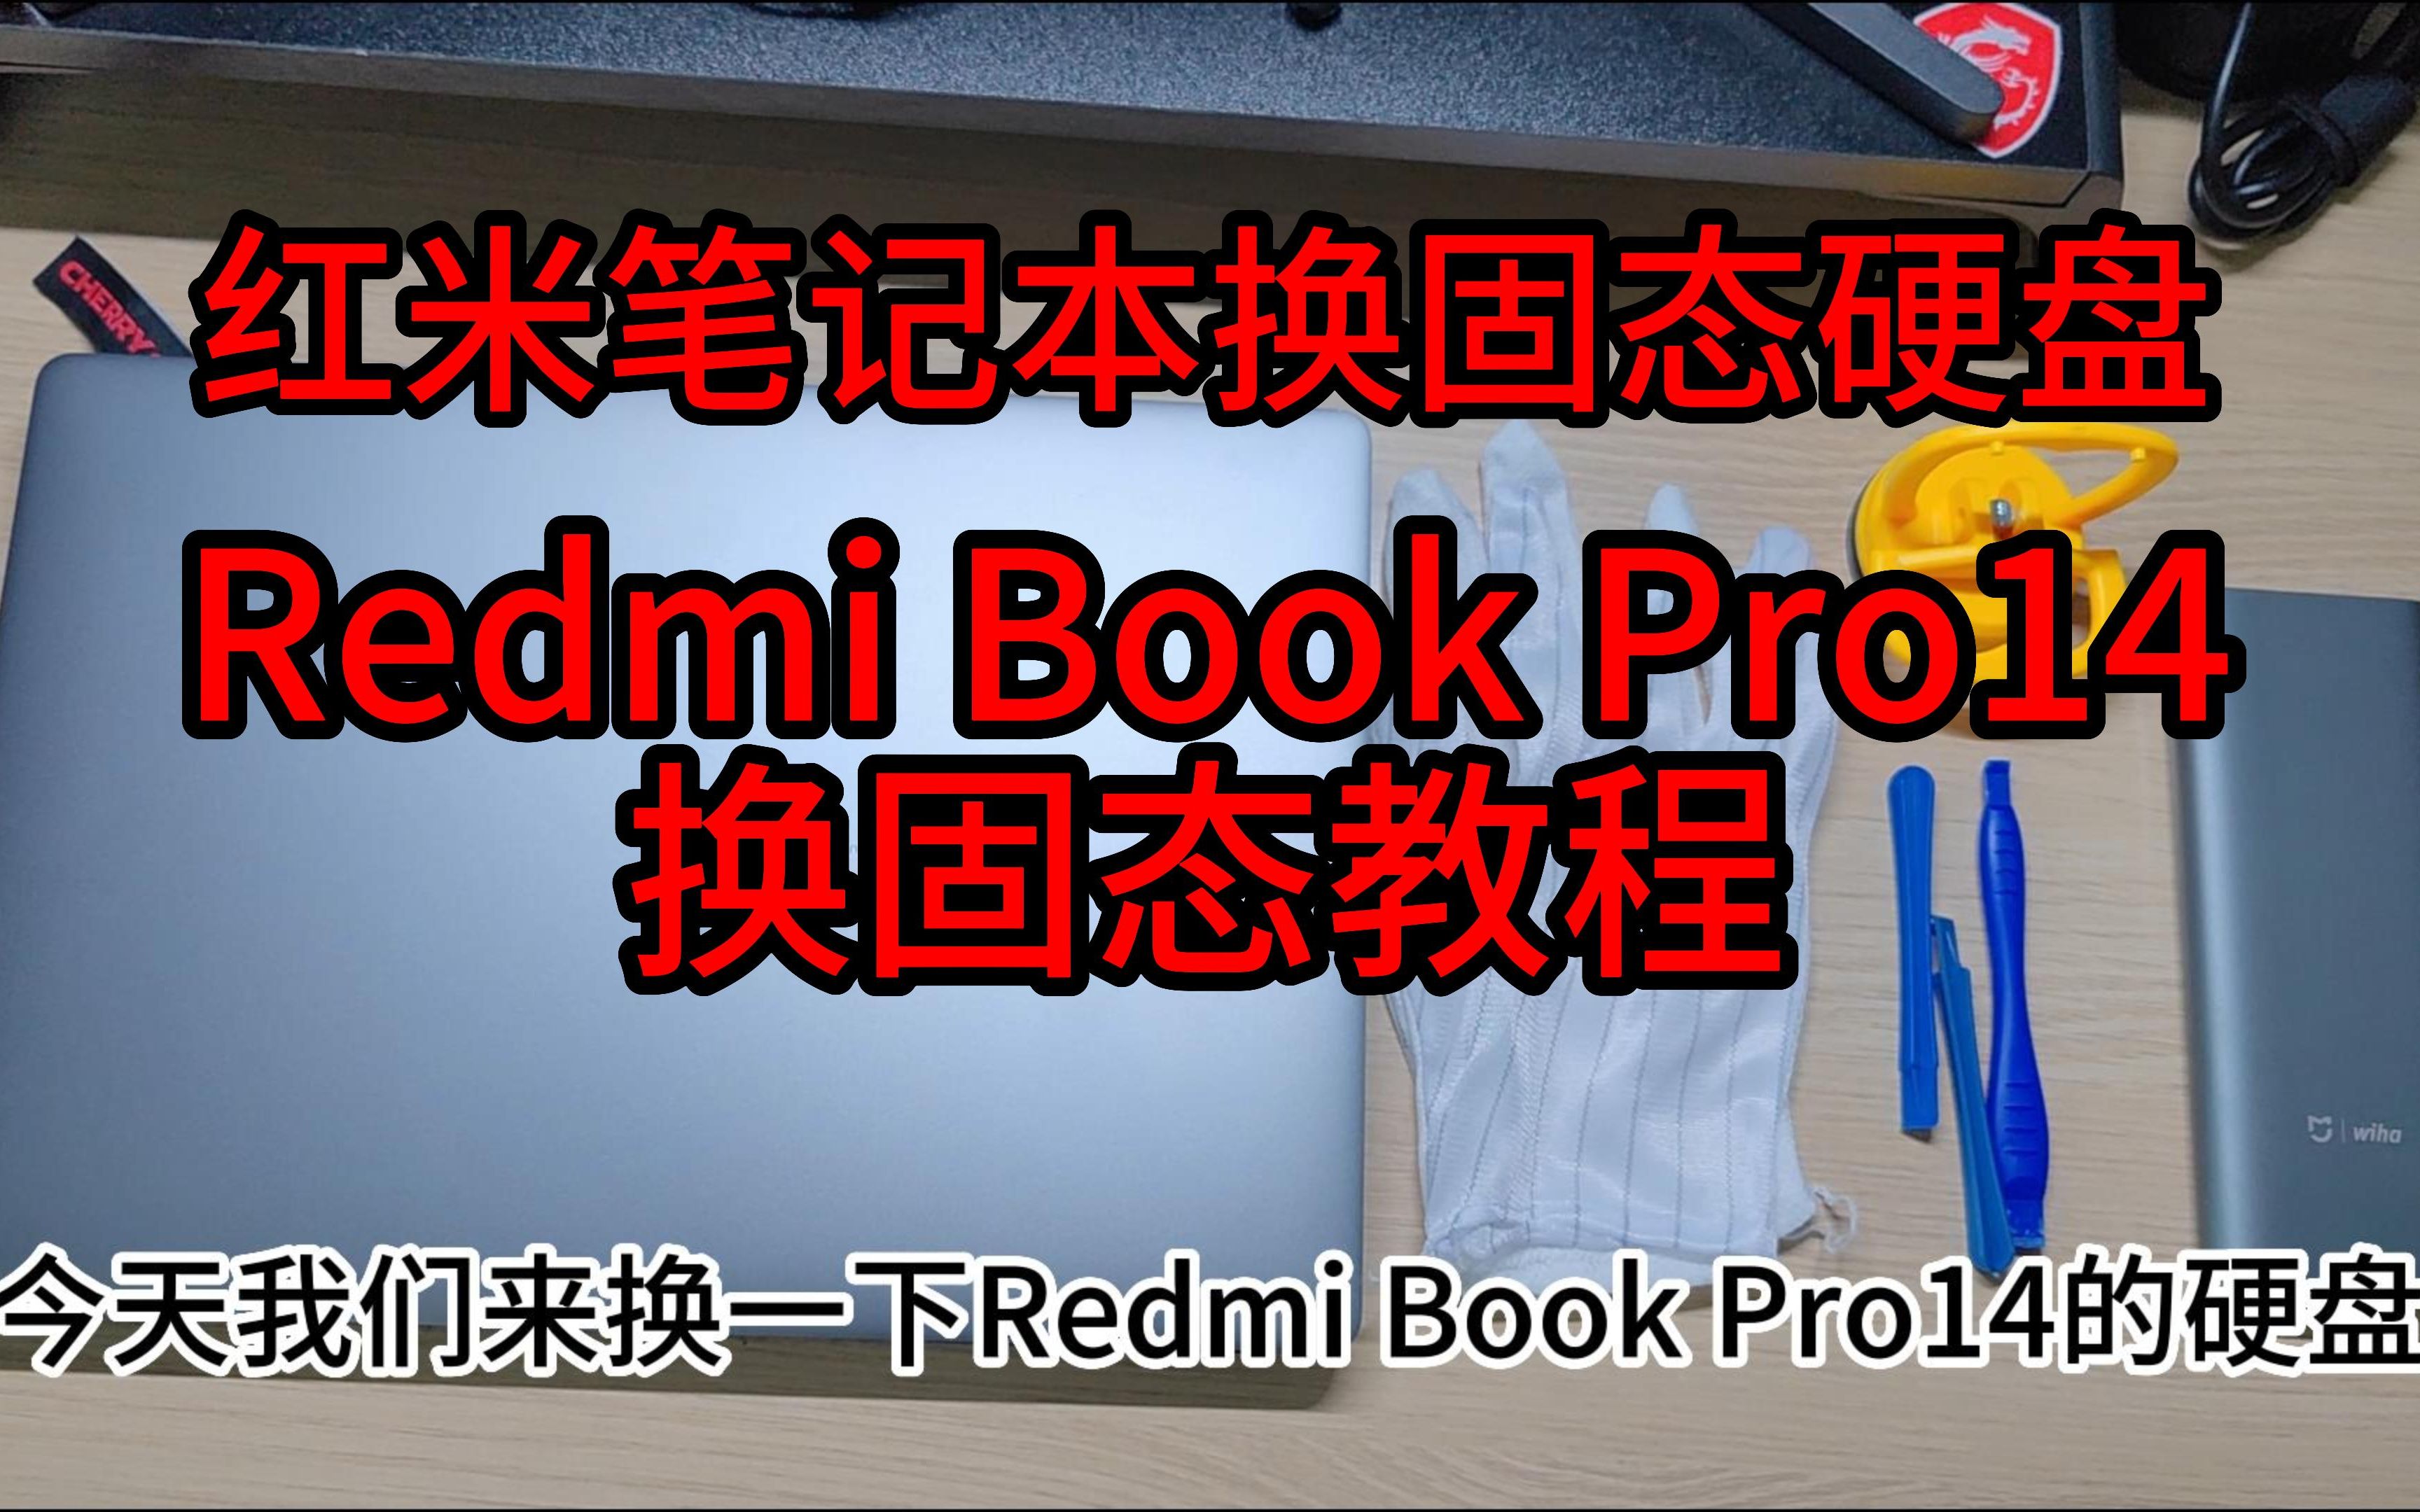 红米笔记本RedmiBookPro14更换固态硬盘教程